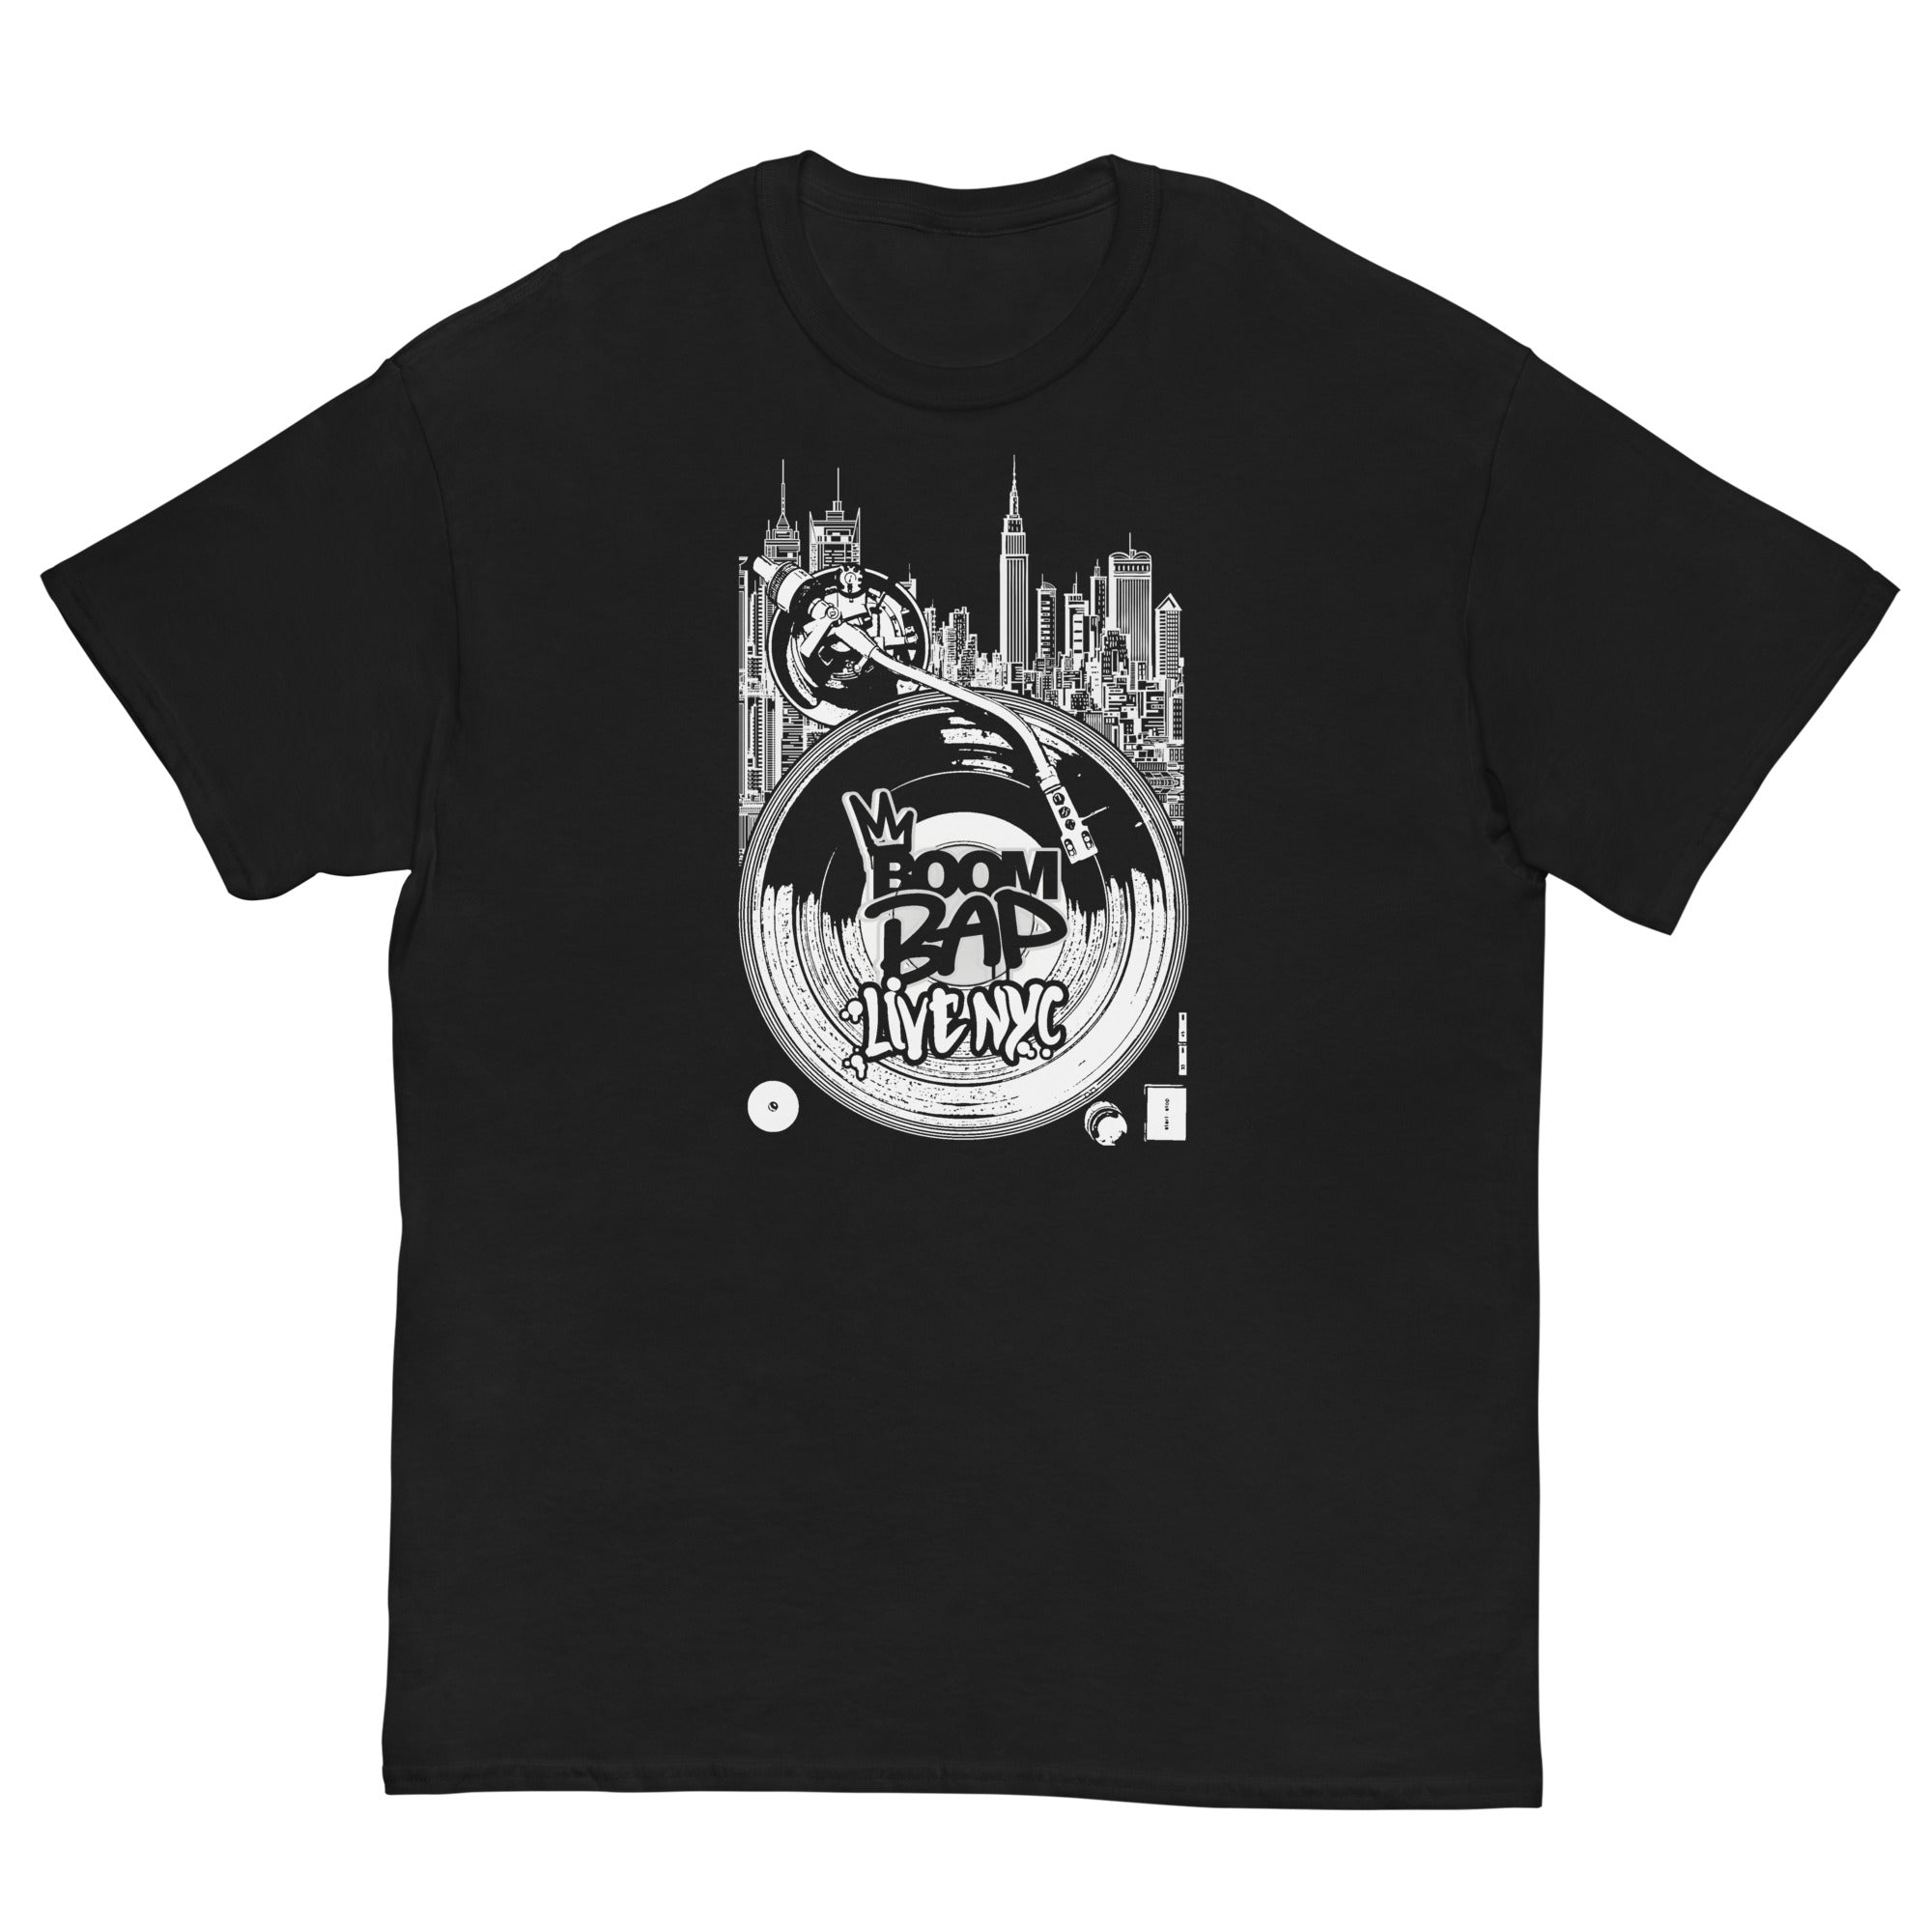 BOOM BAP LIVE NYC - Men's T-Shirt